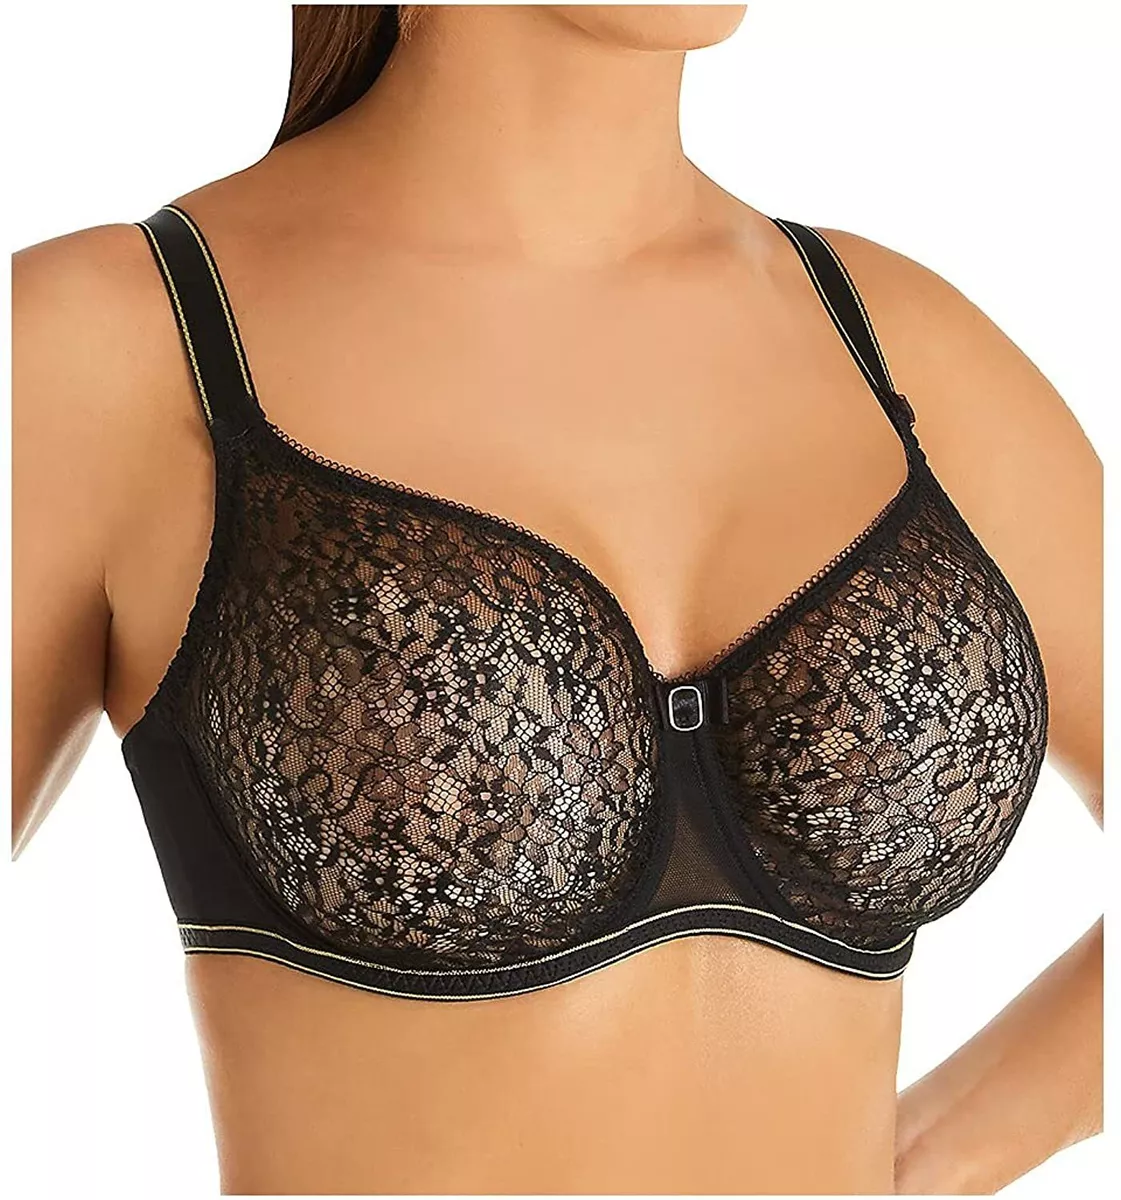 Wholesale 38e bra For Supportive Underwear 